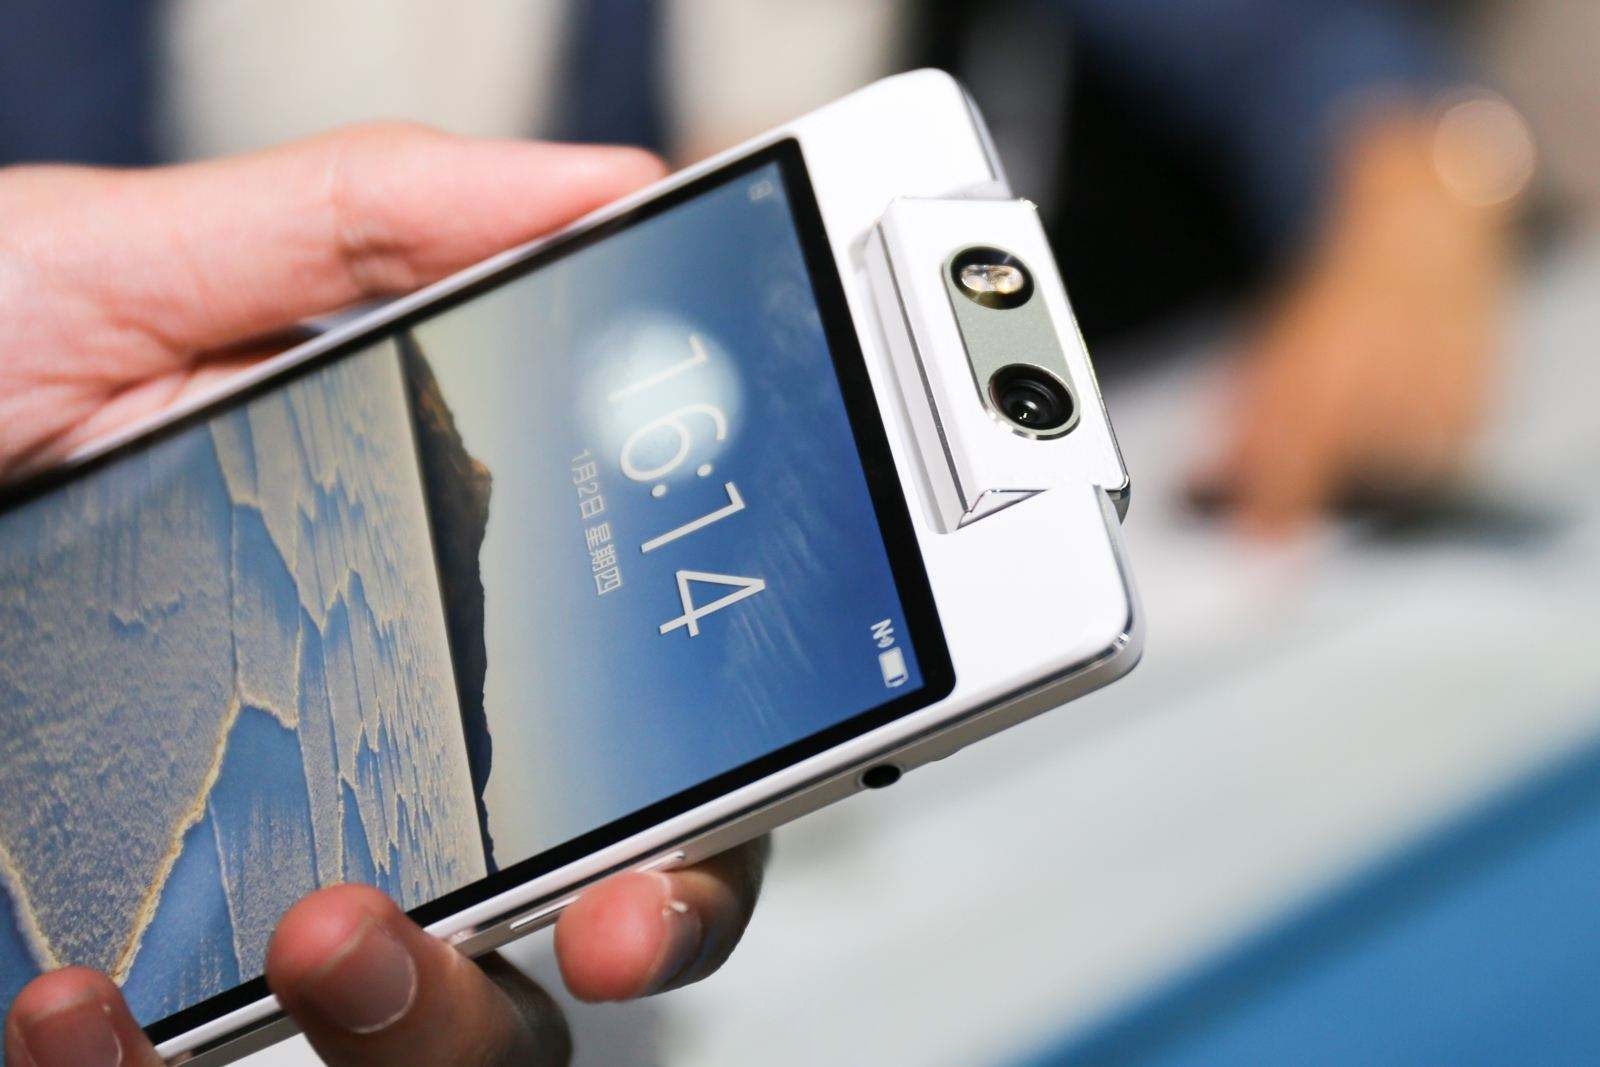 Rumor: OPPO plans to revive N-series smartphones